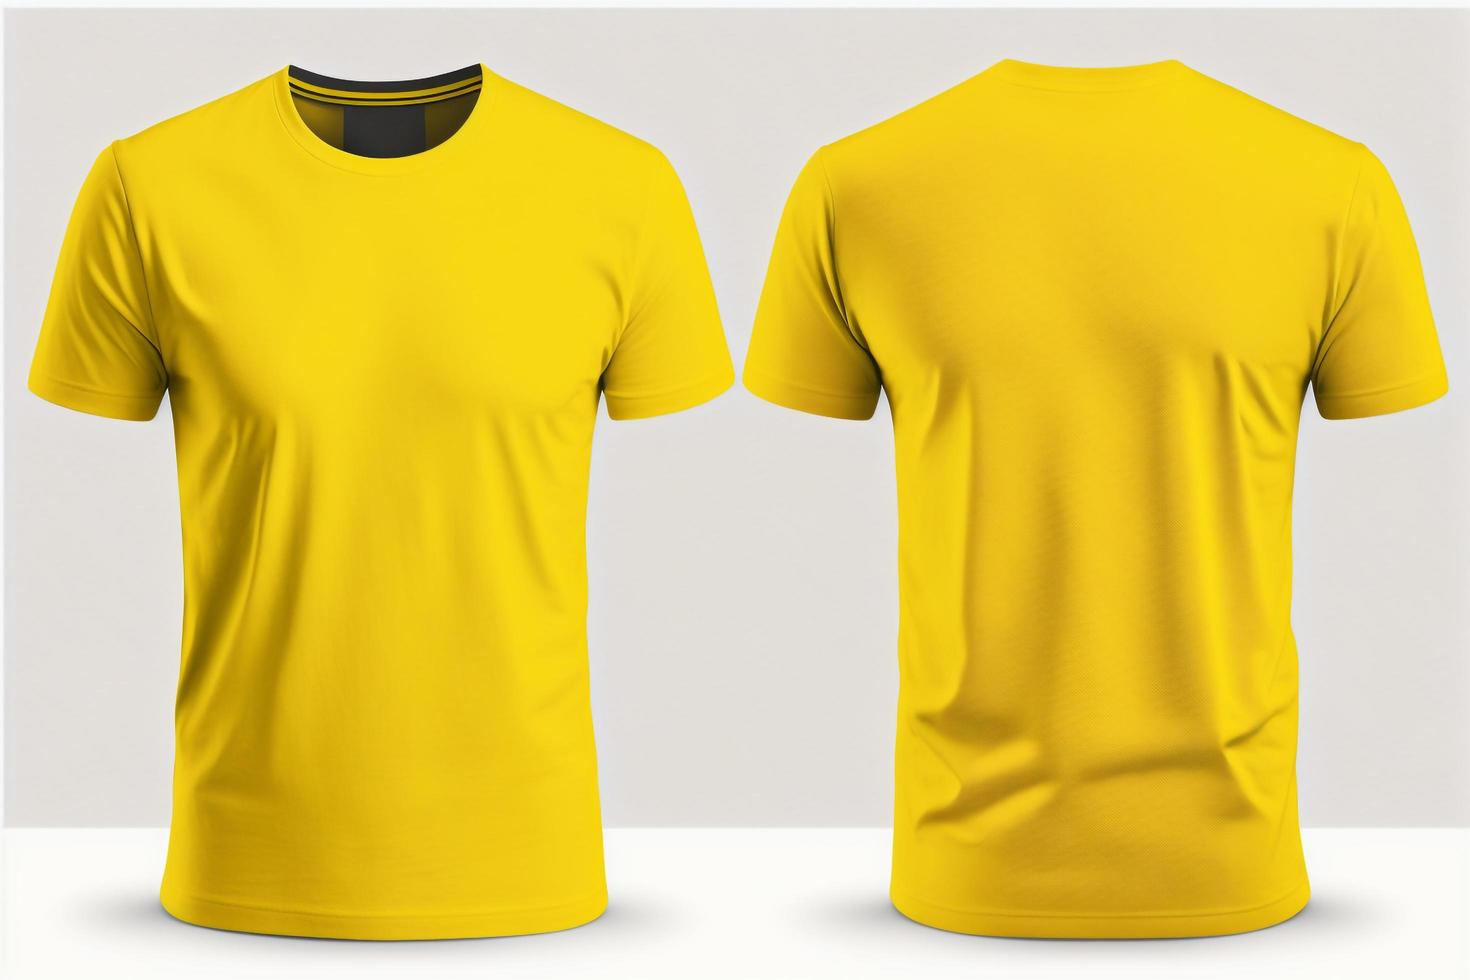 brincar do uma em branco real amarelo camiseta frente e costas isolado em branco fundo. foto